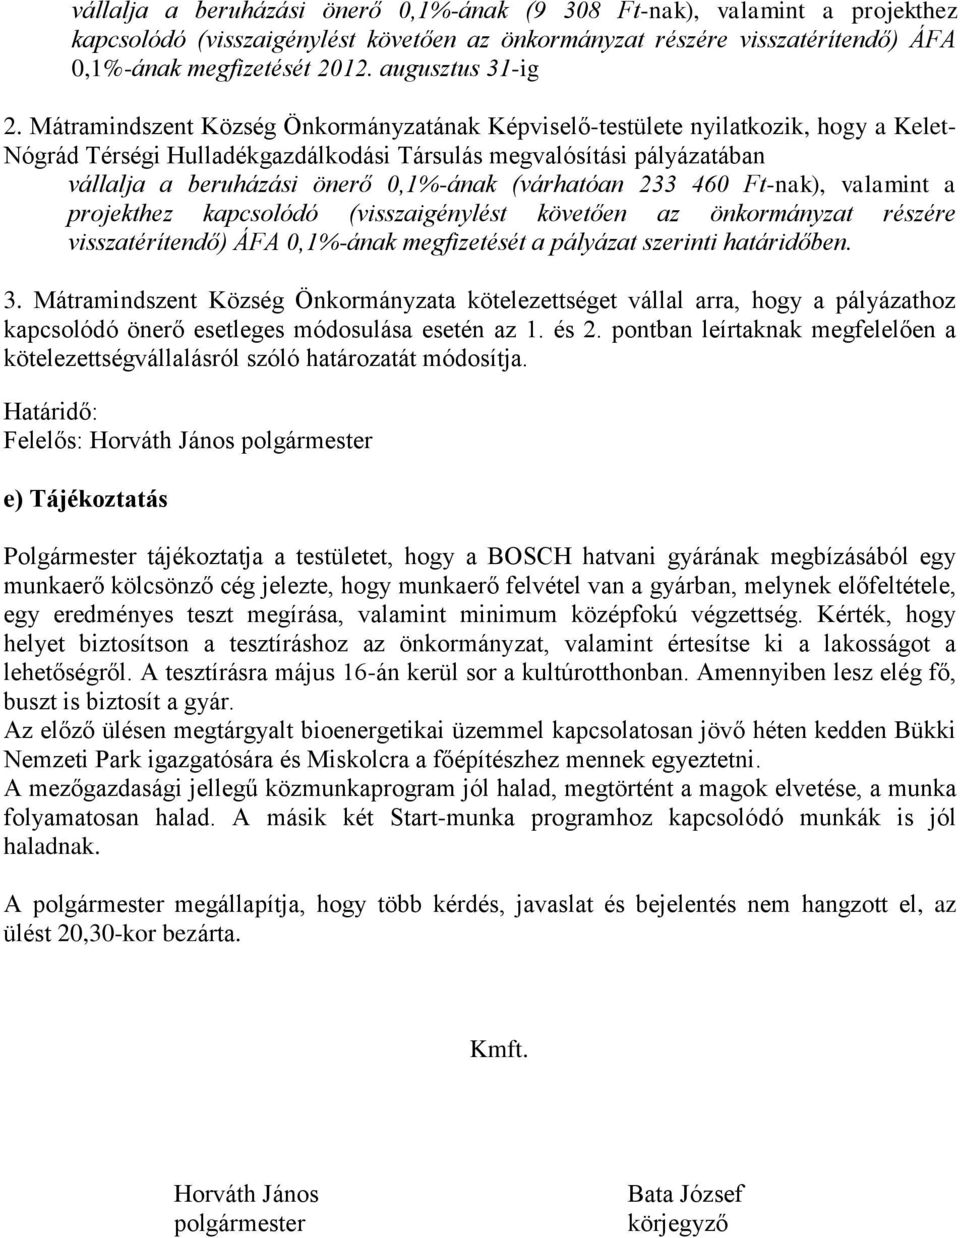 Mátramindszent Község Önkormányzatának Képviselő-testülete nyilatkozik, hogy a Kelet- Nógrád Térségi Hulladékgazdálkodási Társulás megvalósítási pályázatában vállalja a beruházási önerő 0,1%-ának